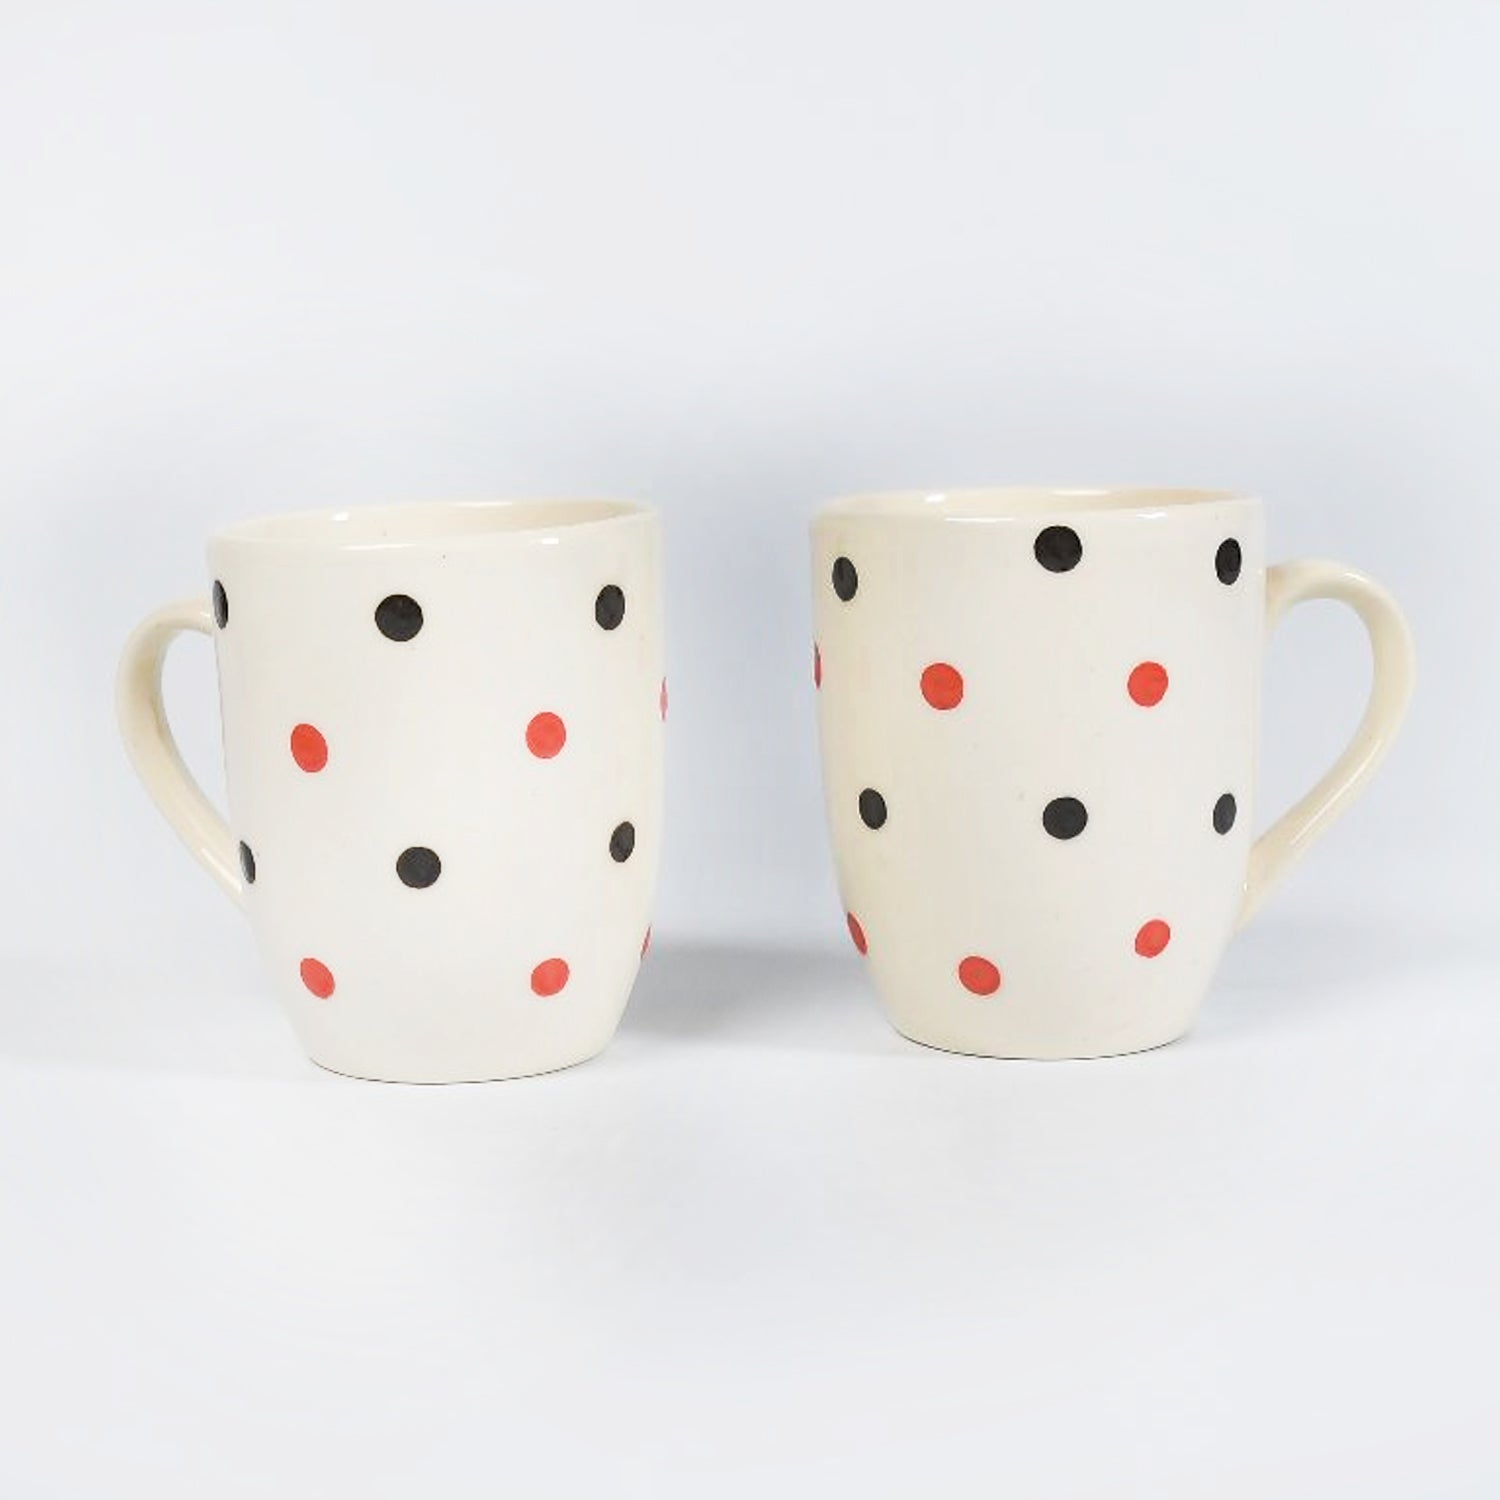 7140 Cup & Plate Set Morning Tea Serving Use Ceramic Mug Set For Home & Kitchen Use 